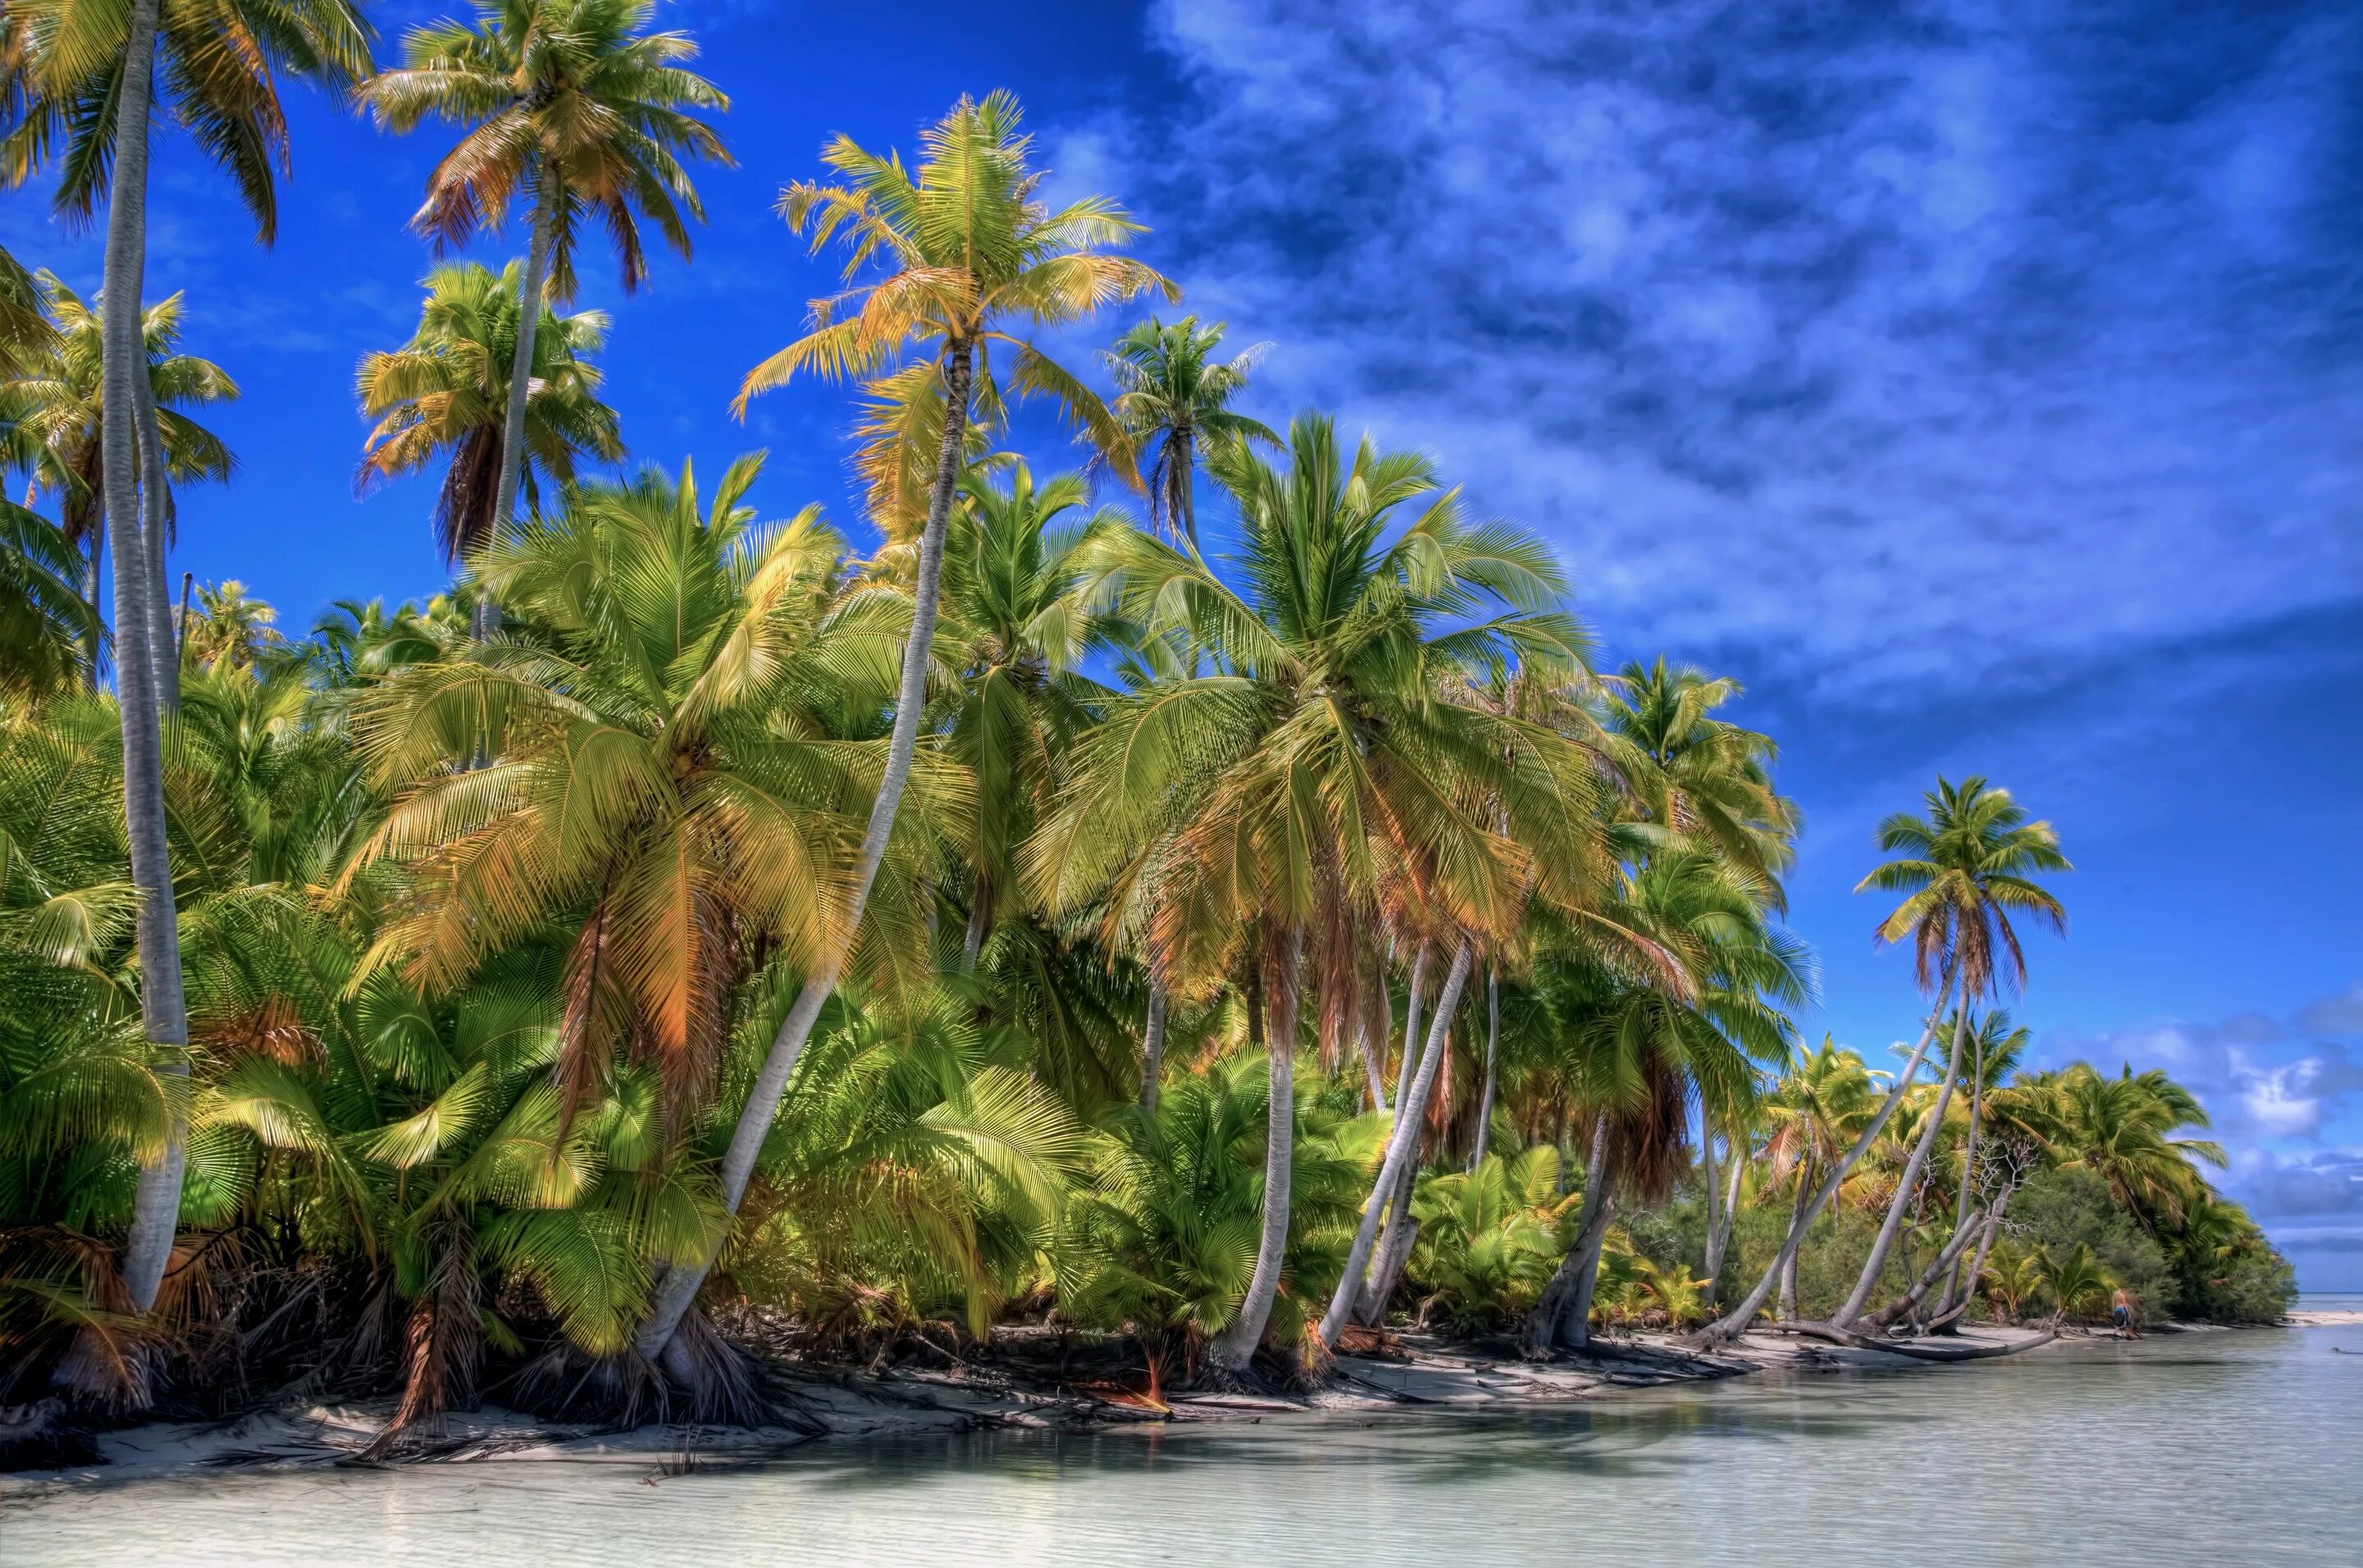 Бали Пальма Баунти. Рощи кокосовых пальм Филиппины. Море пляж пальмы. Пейзаж с пальмами.